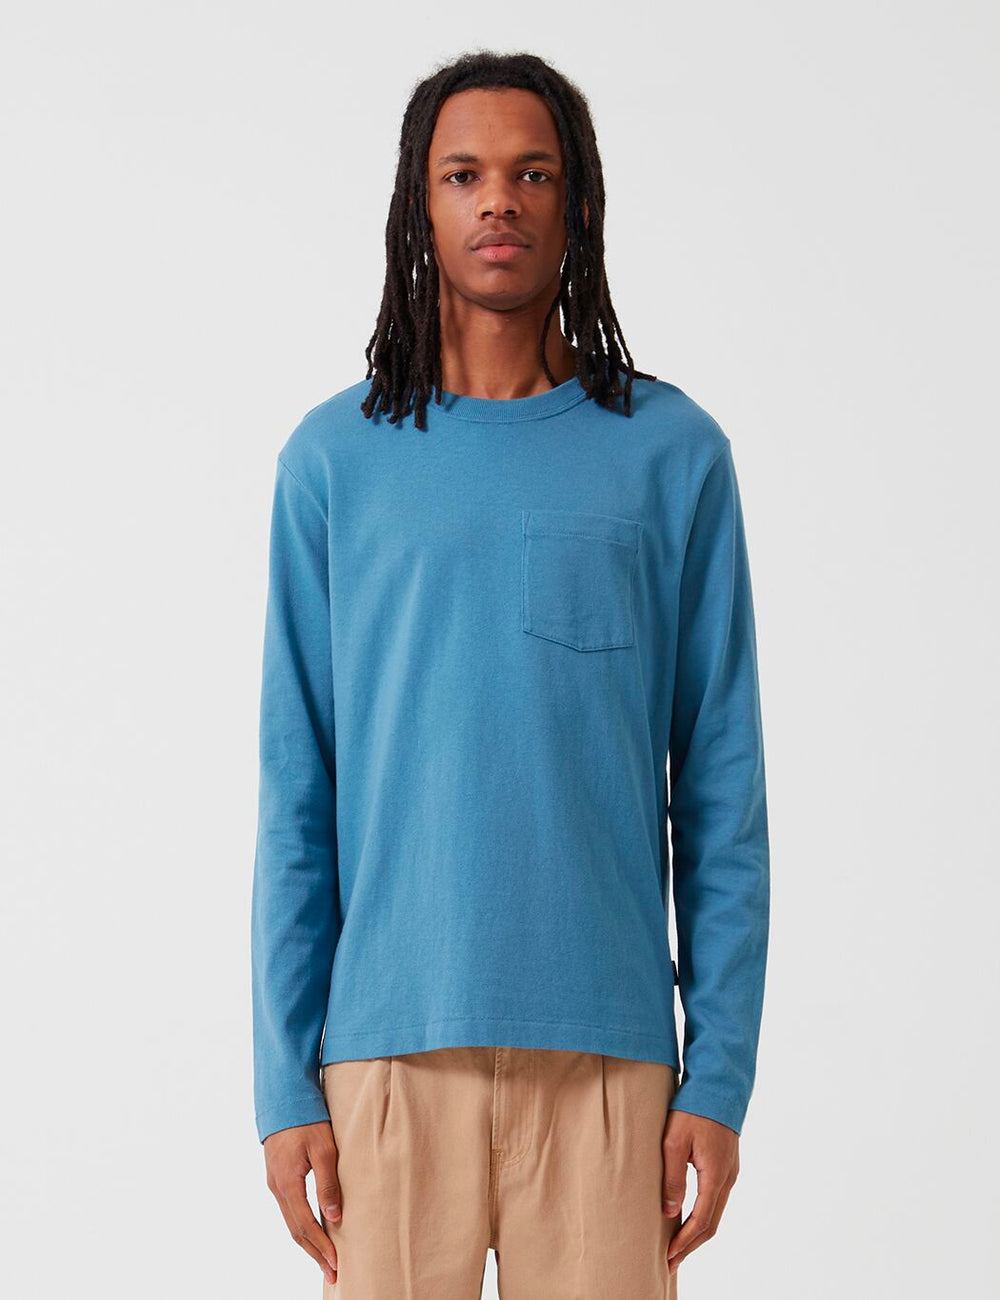 パタゴニアオーガニックコットンポケットTシャツ-ピジョンブルー|URBAN EXCESS。